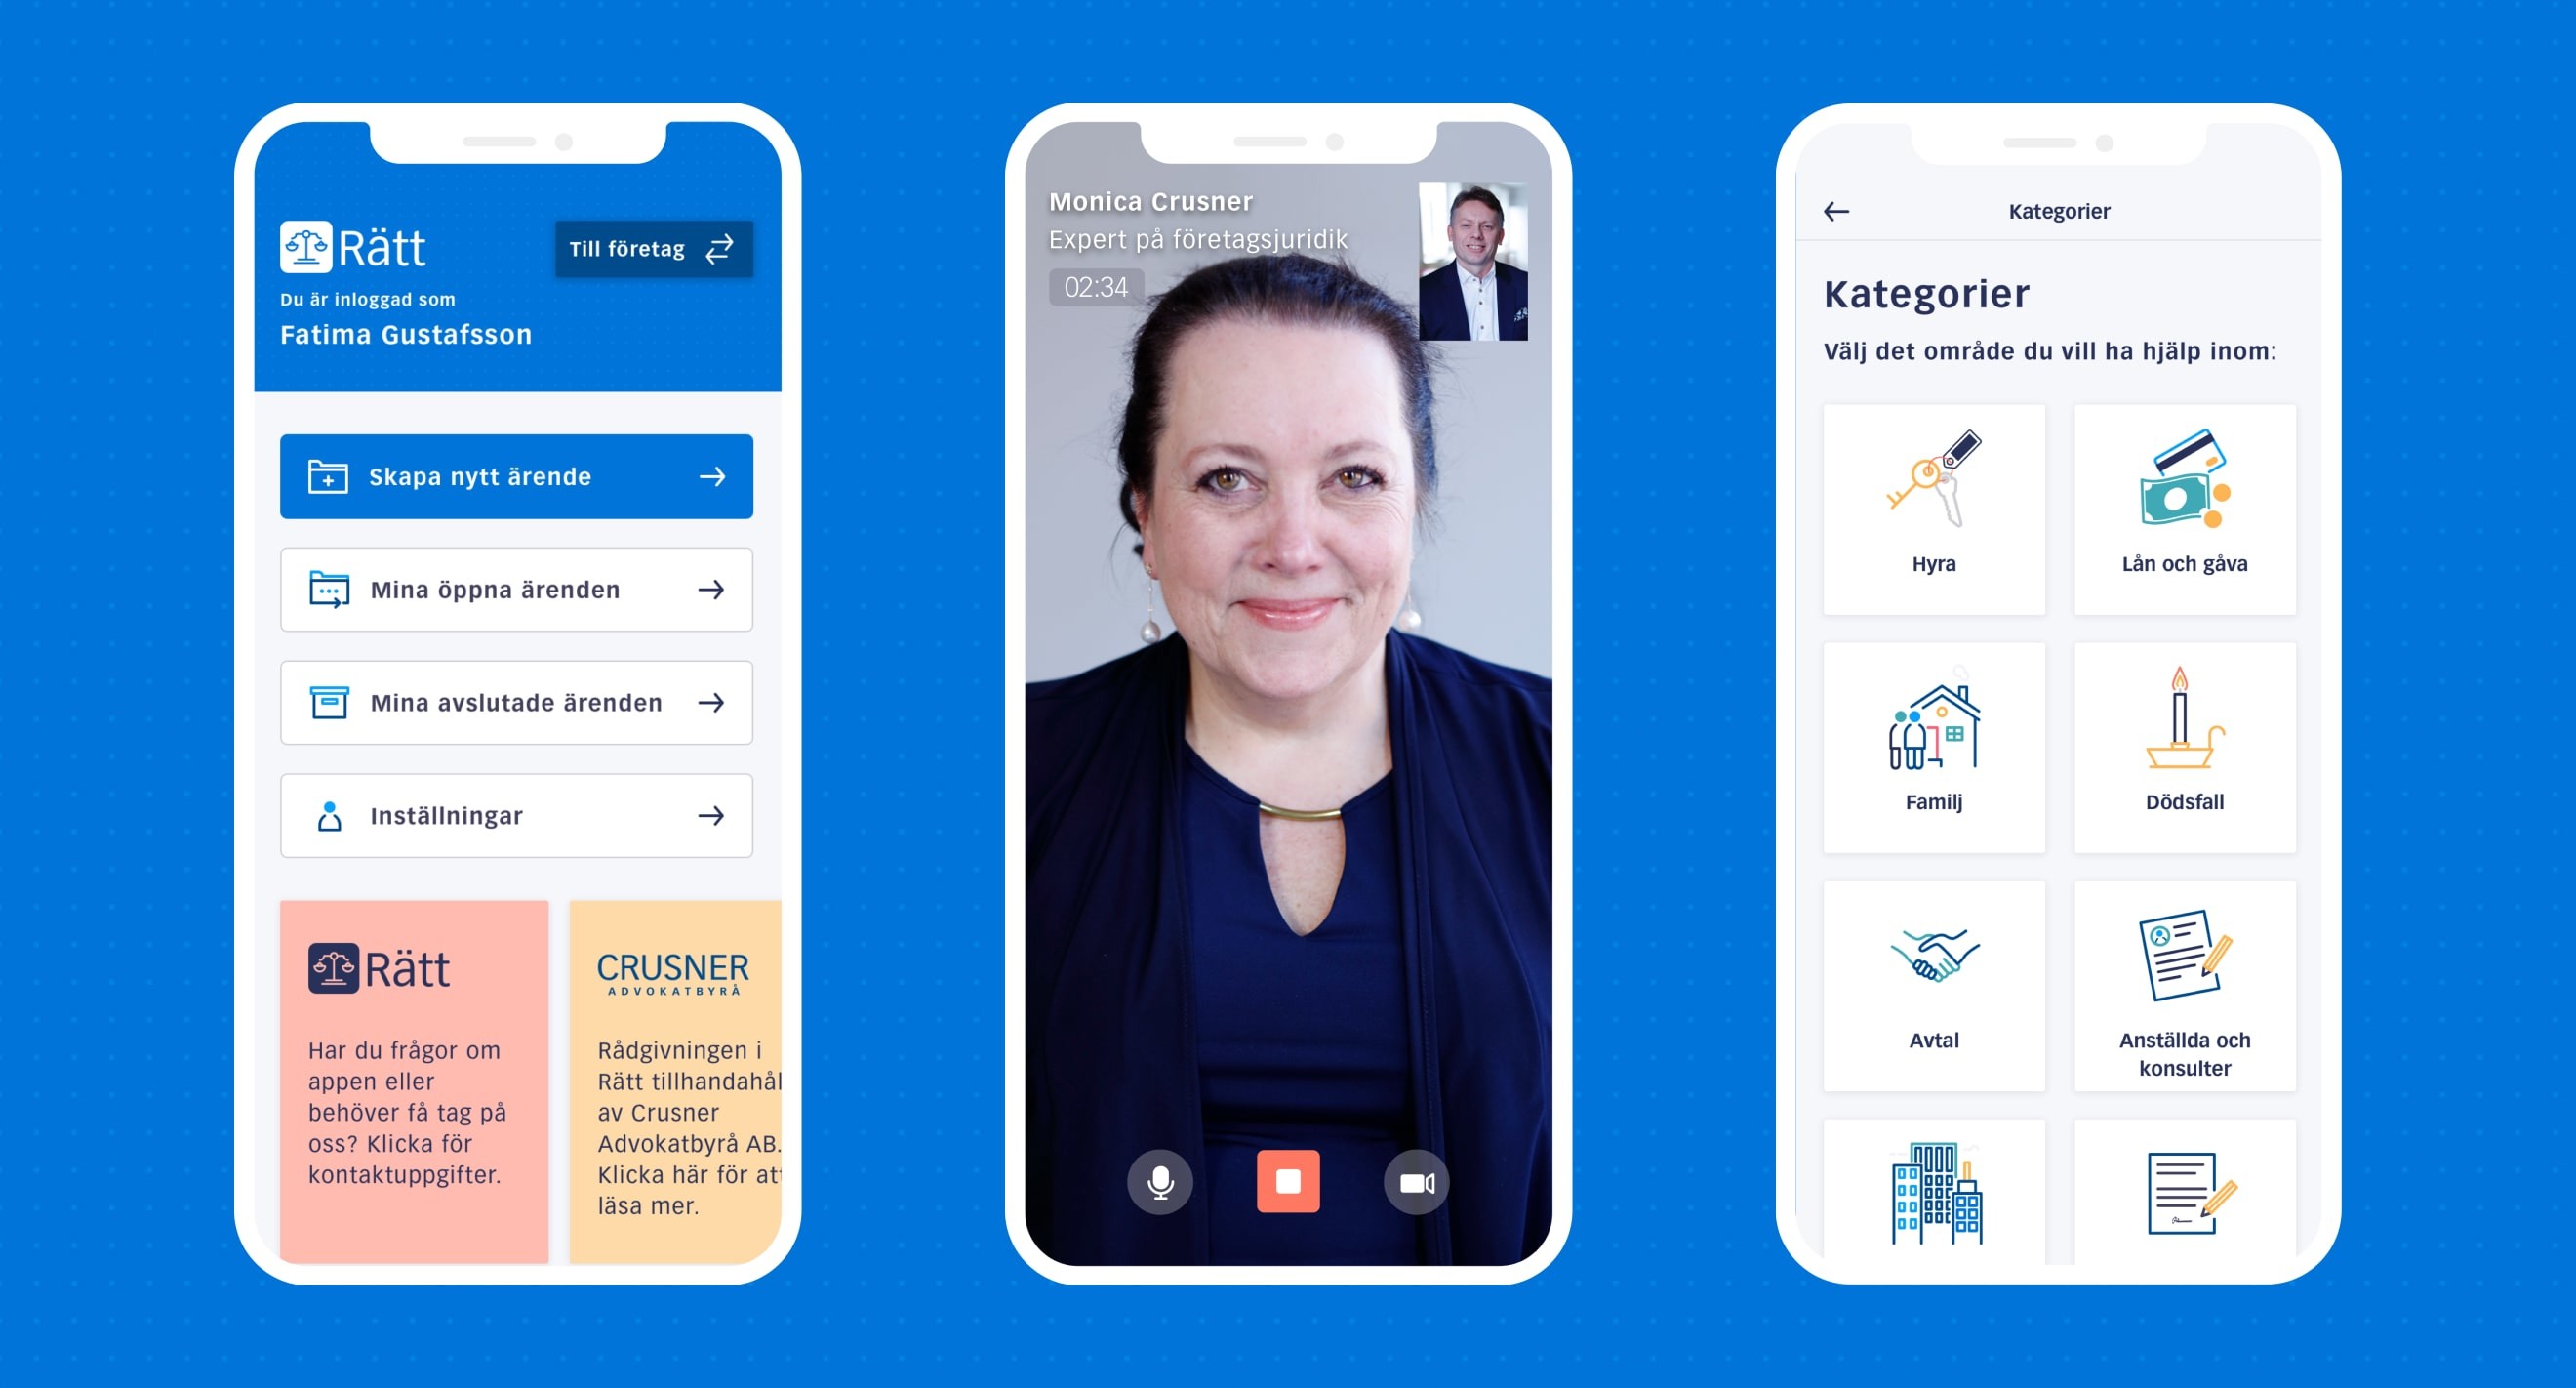 Screenshots from the Rätt app